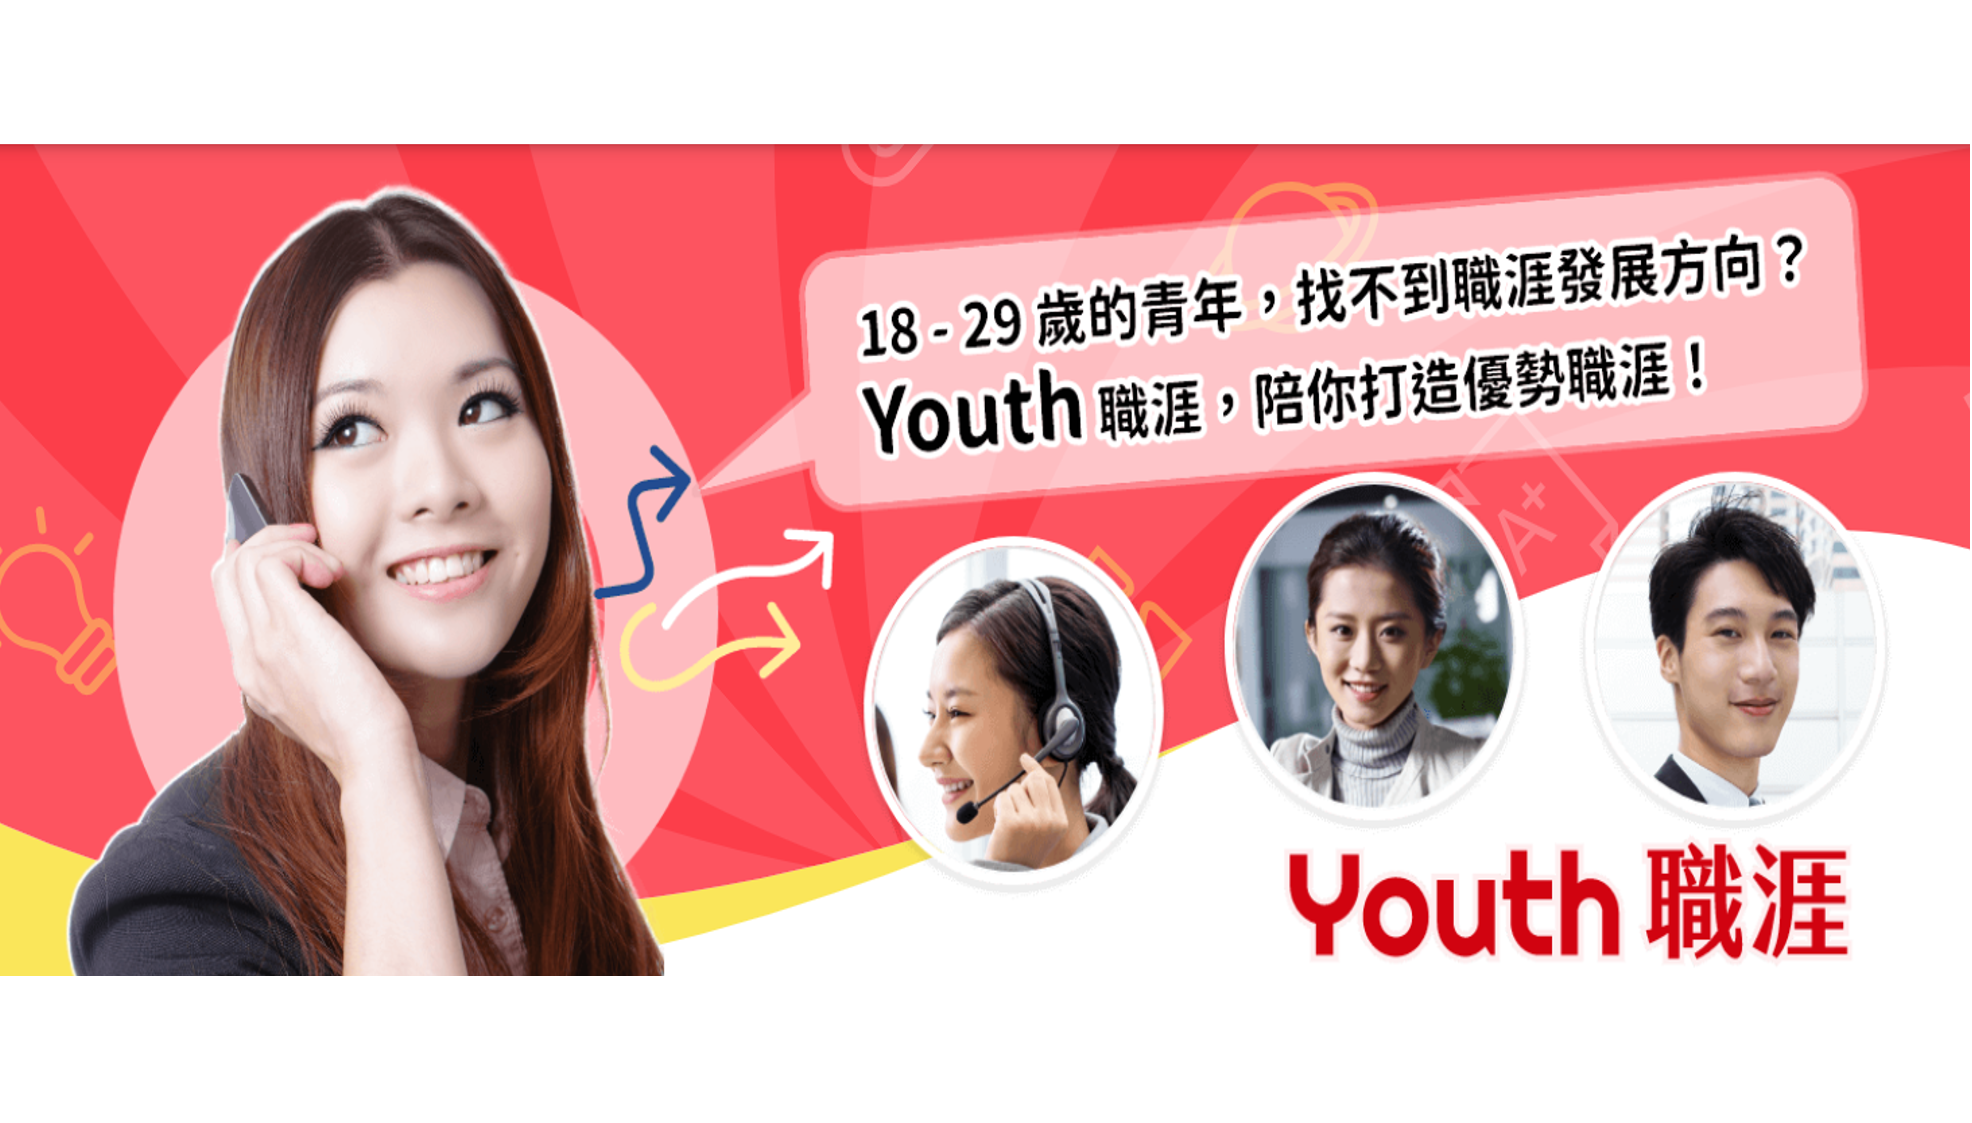 Youth職涯就業諮詢平臺